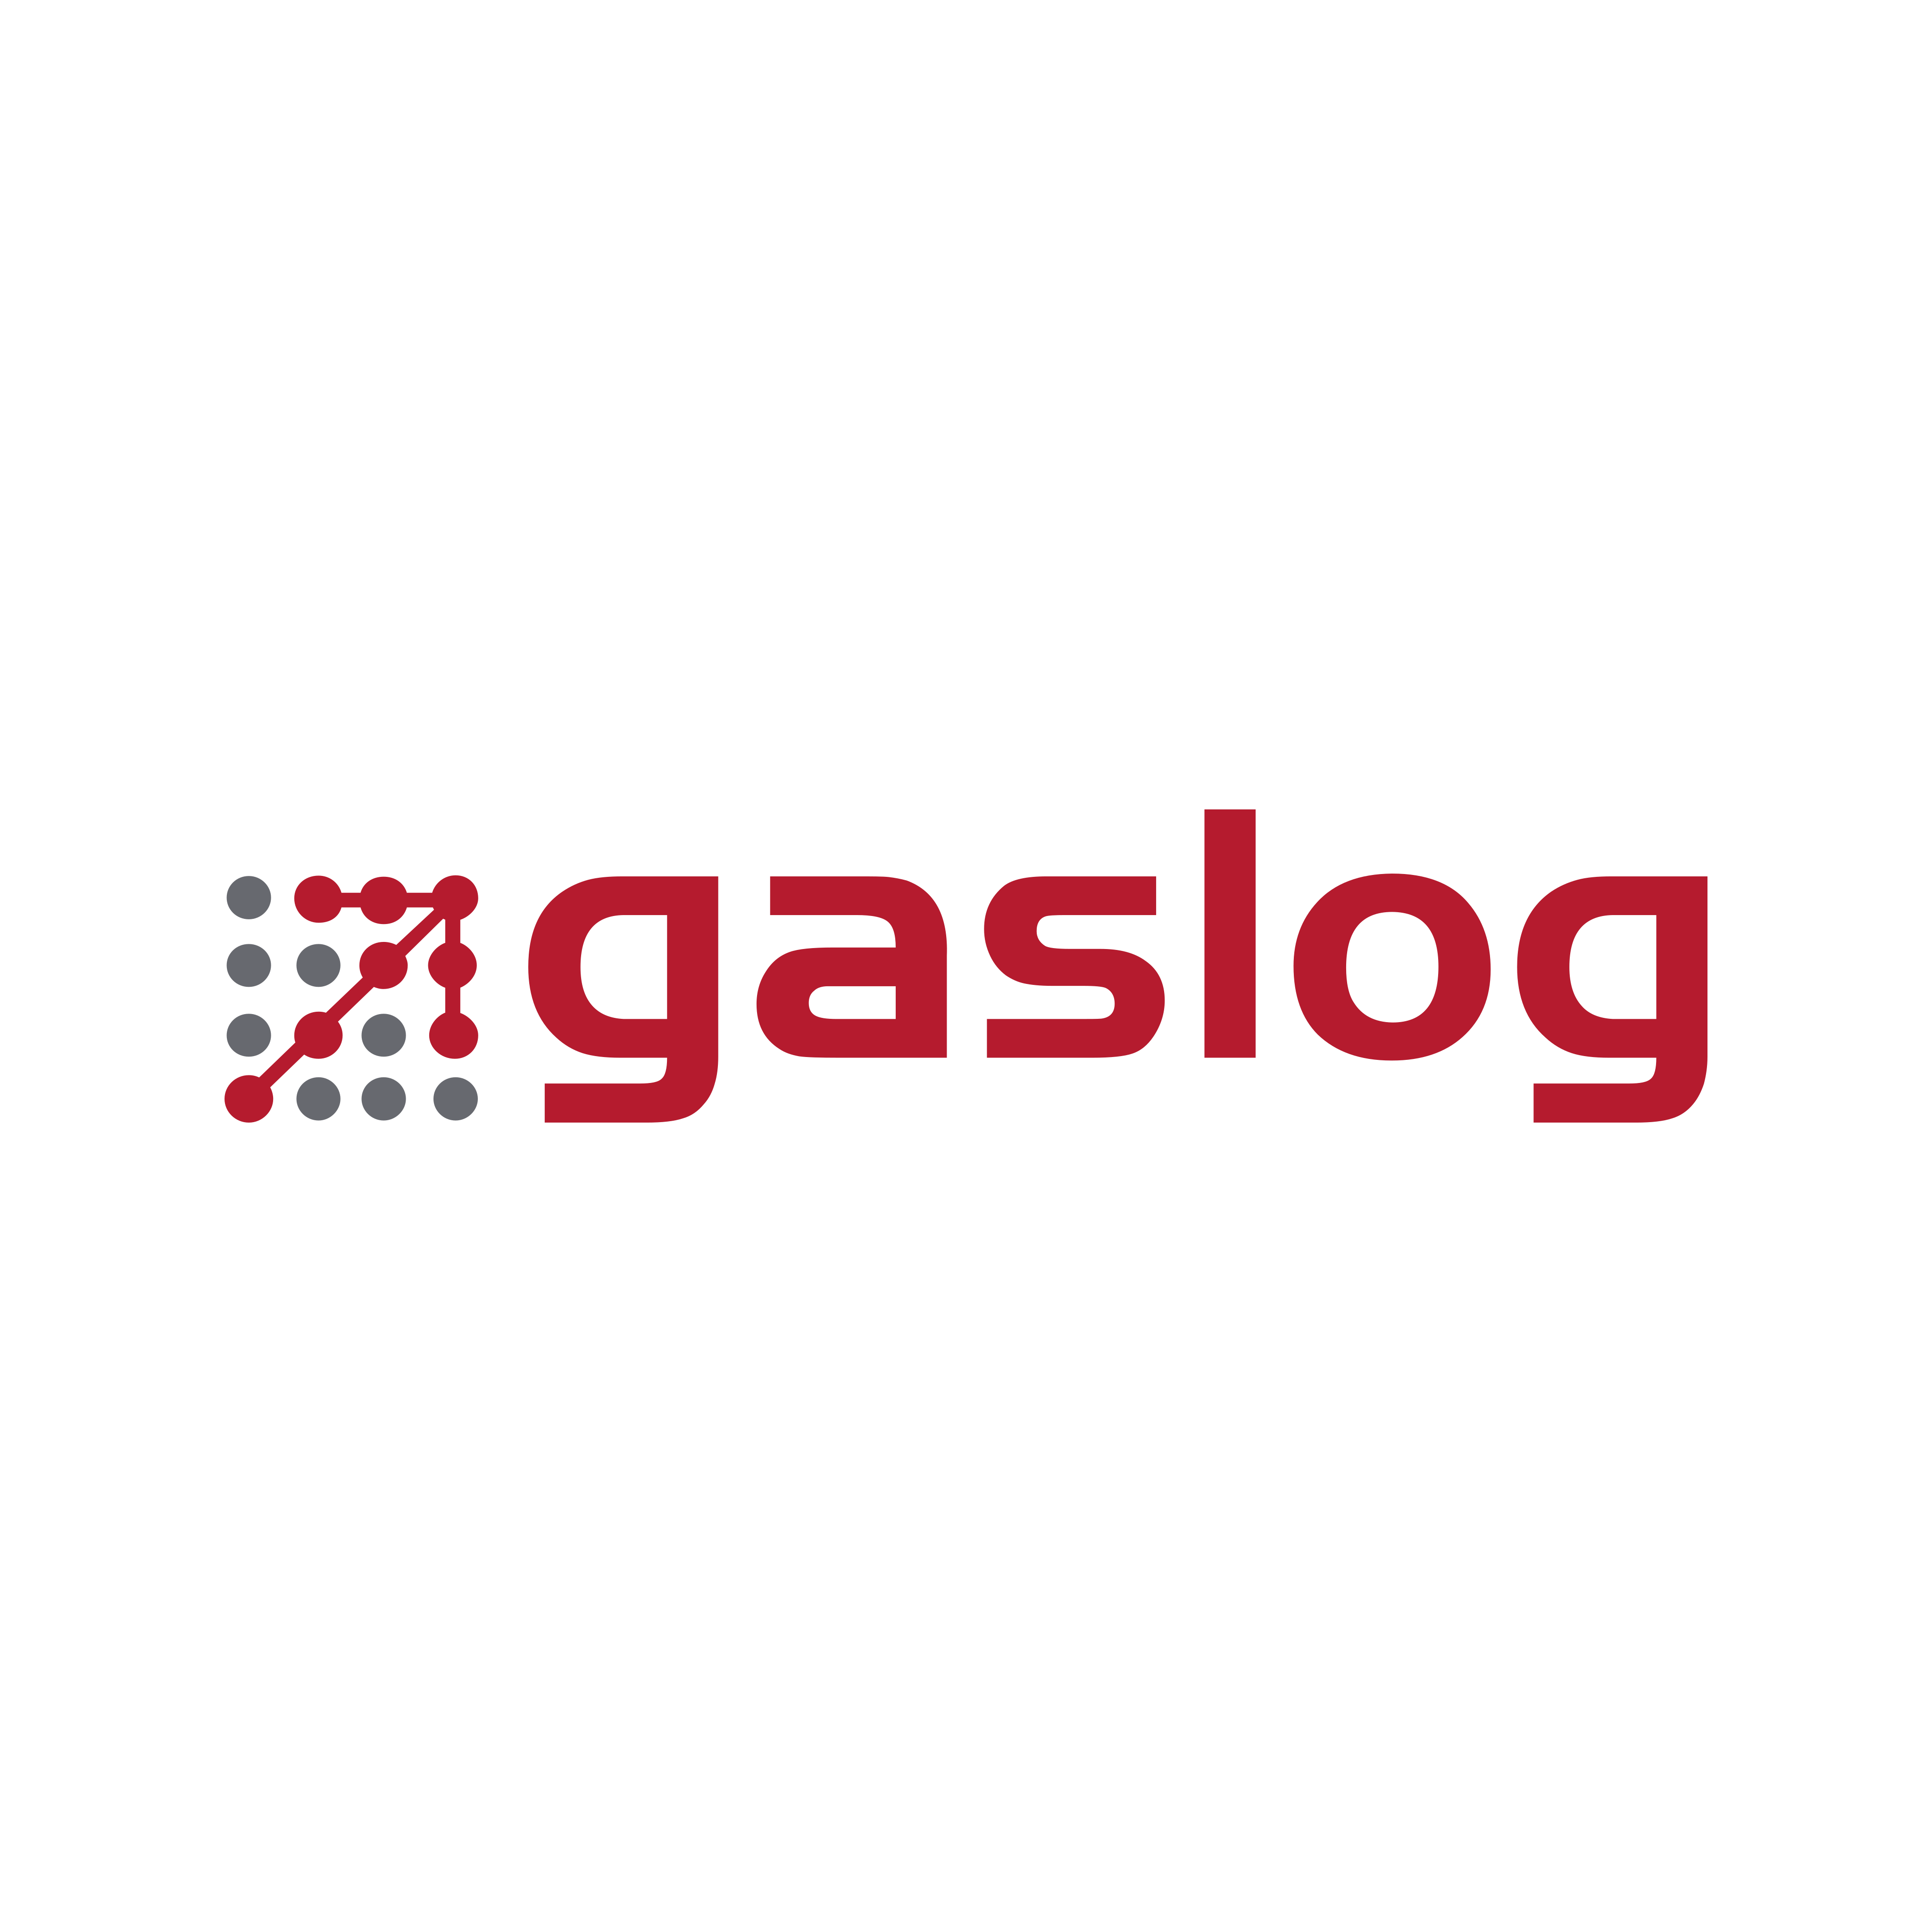 Gaslog Logo PNG.